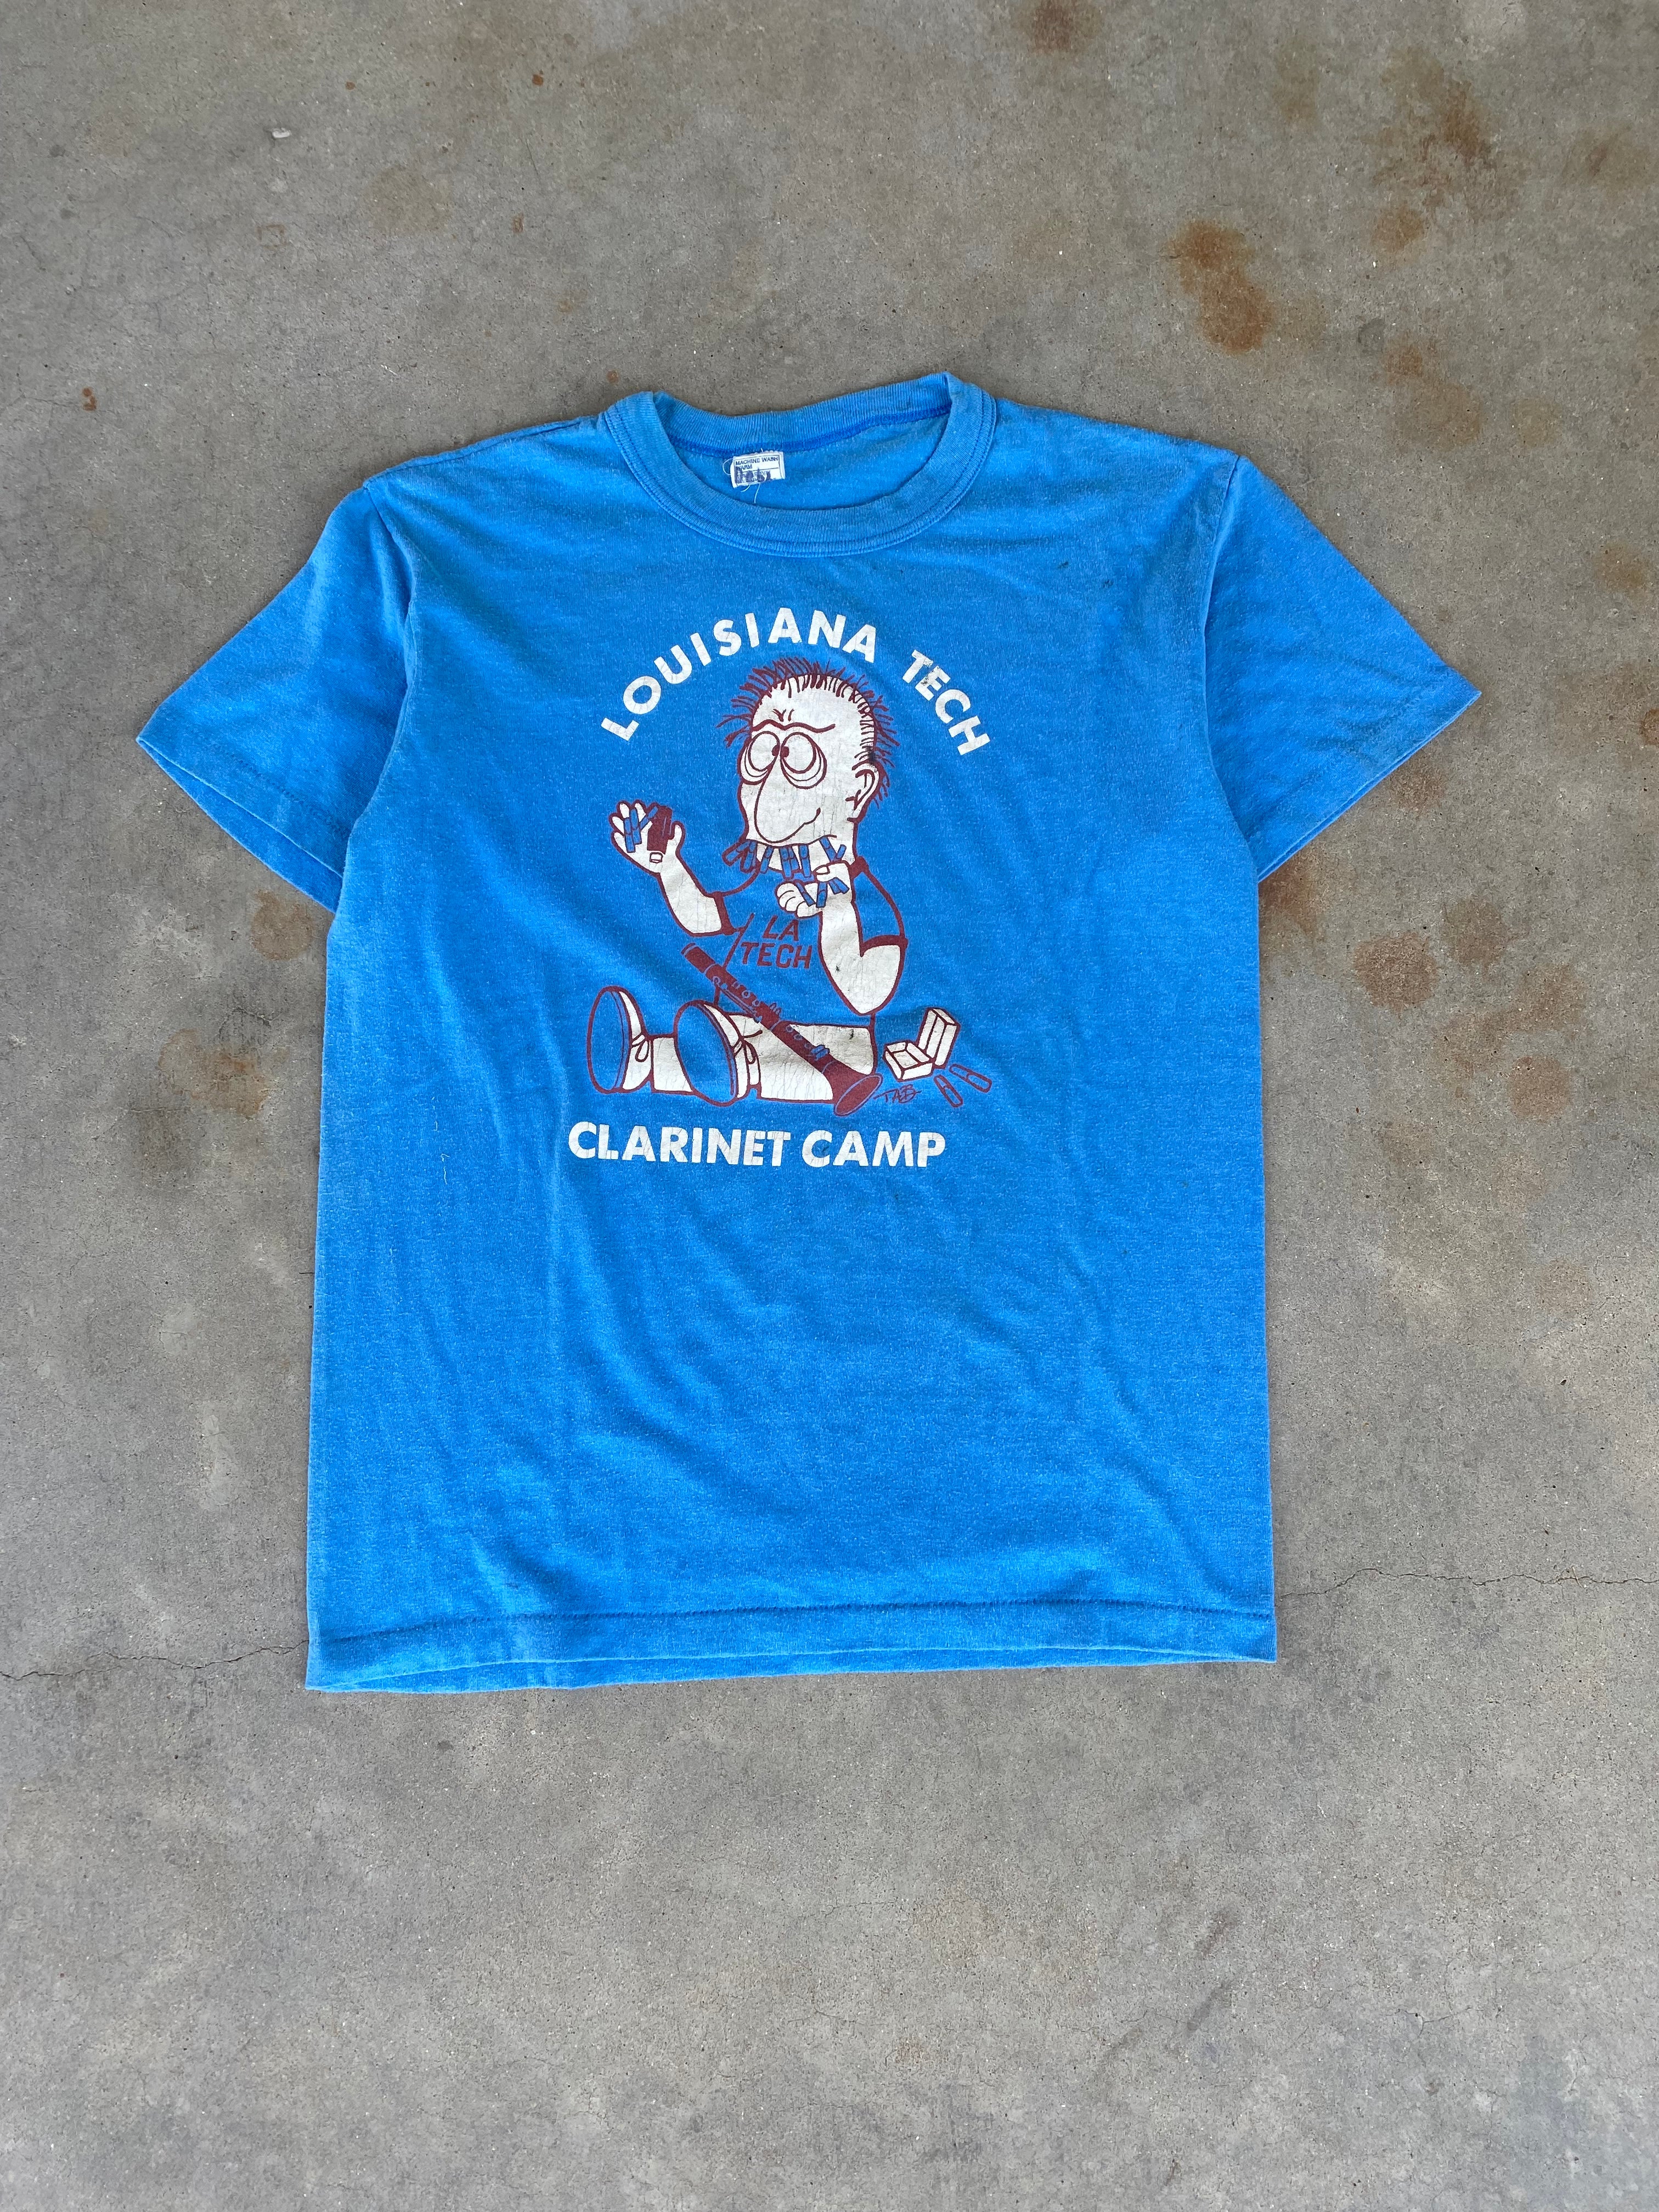 1980s Louisiana Tech Clarinet Camp T-Shirt (S)